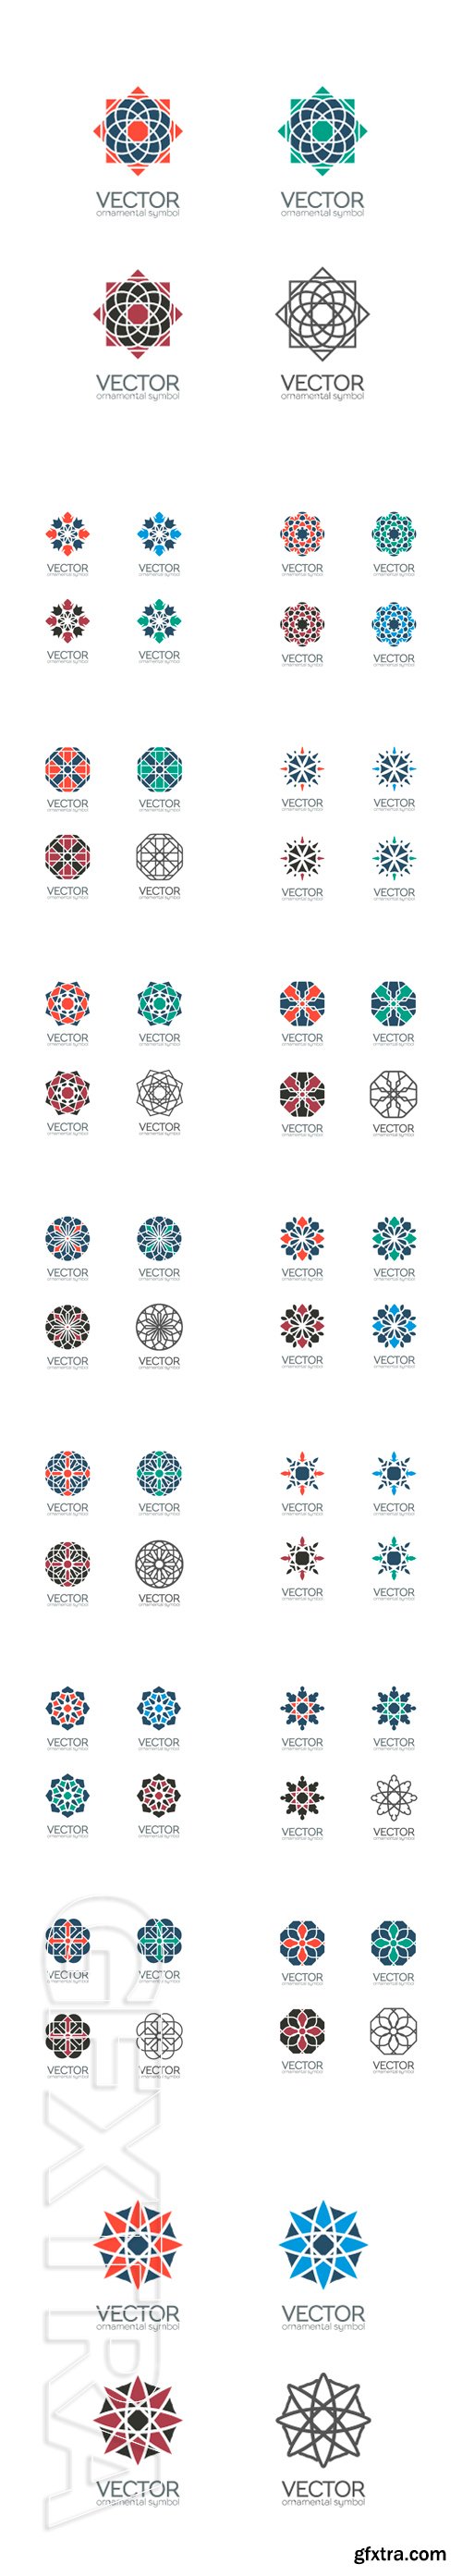 Stock Vectors - Vector ornamental symbols